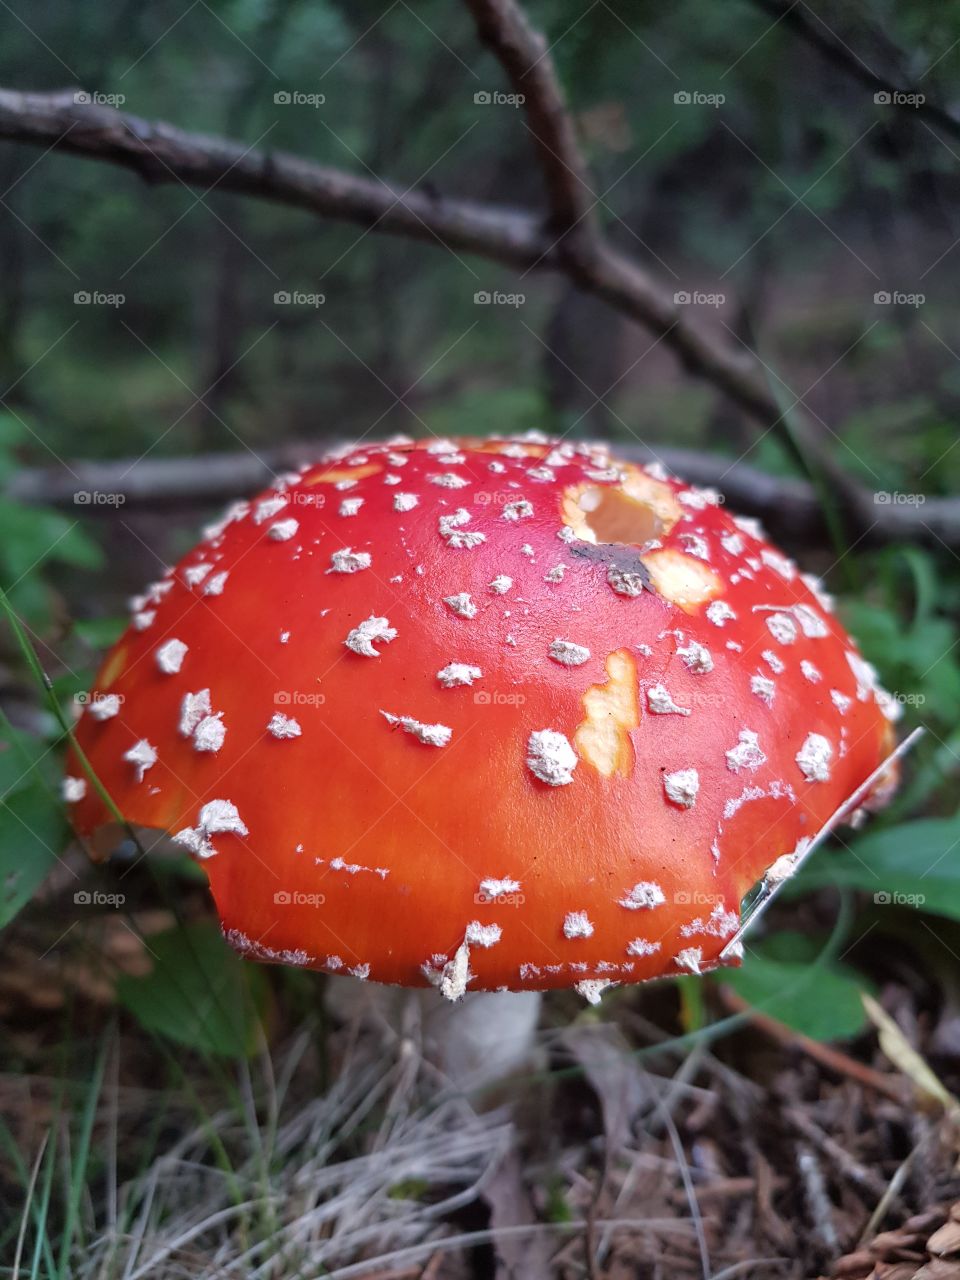 Toxic mushroomer in mountain, beautiful focus